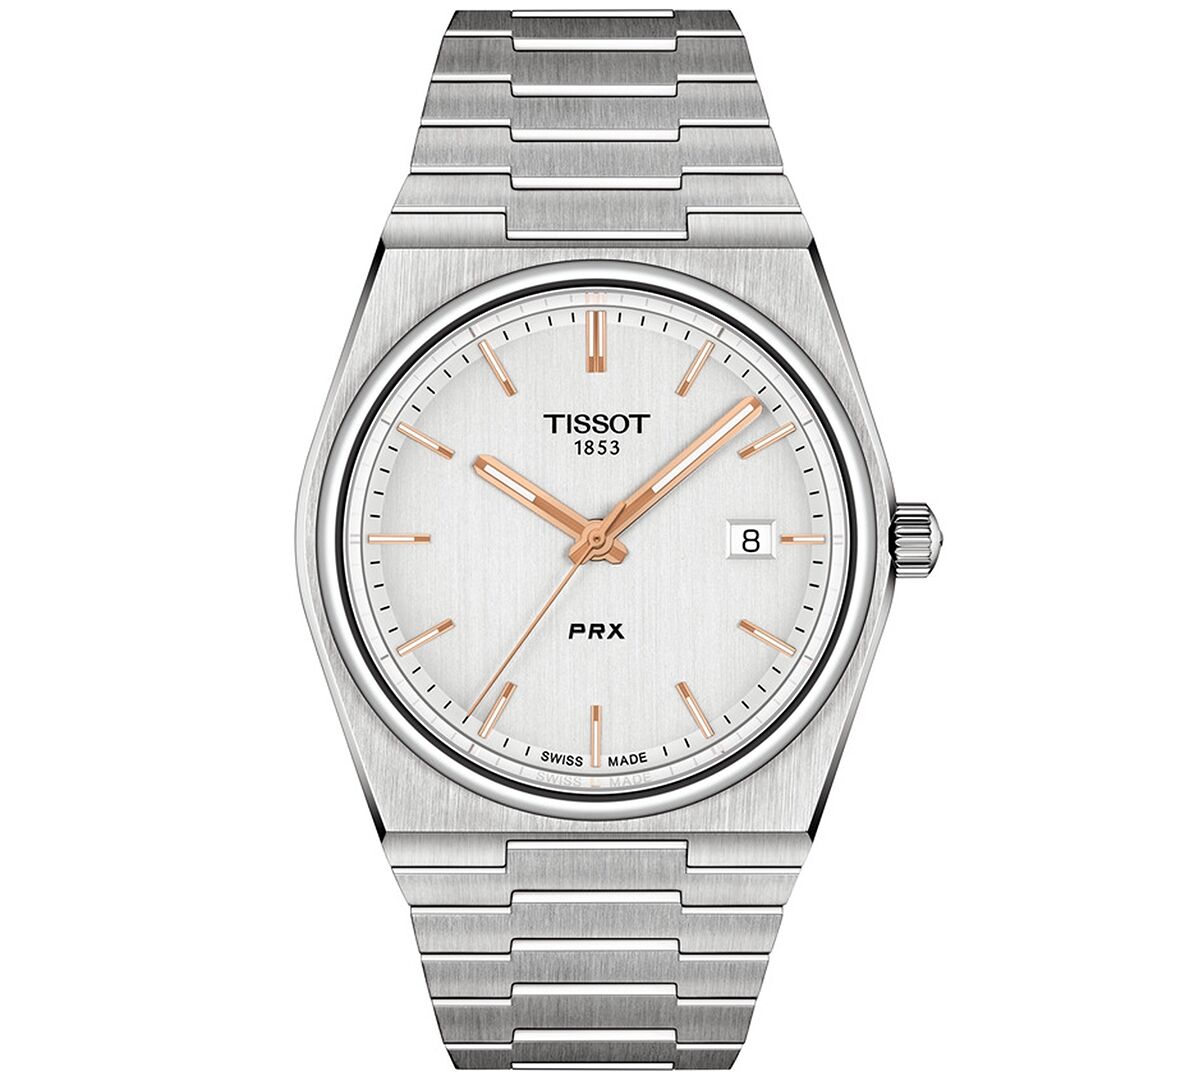 Tissot Men's Swiss Prx Stainless Steel Bracelet Watch 40mm - Silver